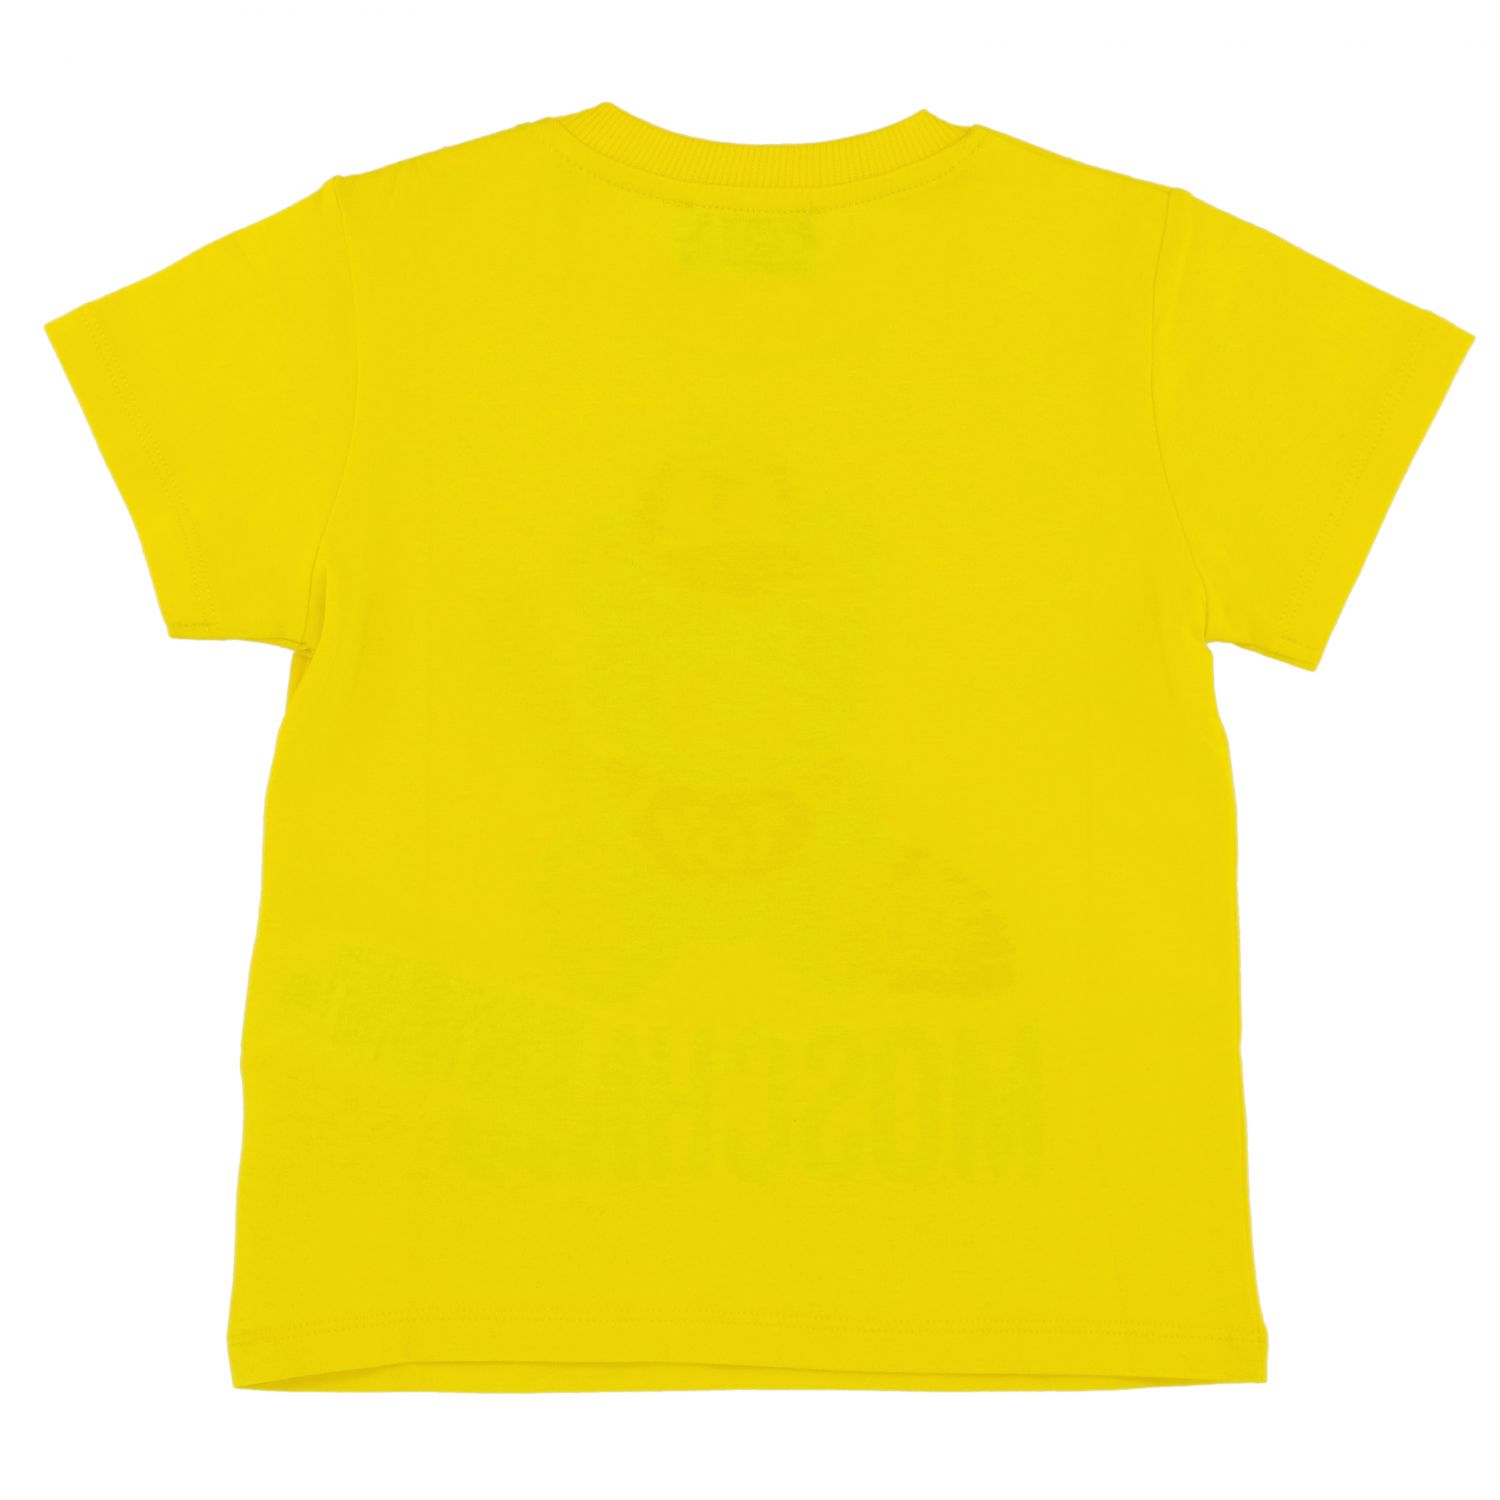 Купить желтые мальчику. Желтая футболка детская. Детские желтые футболки. Футболка для мальчика желтая. Желтая майка.